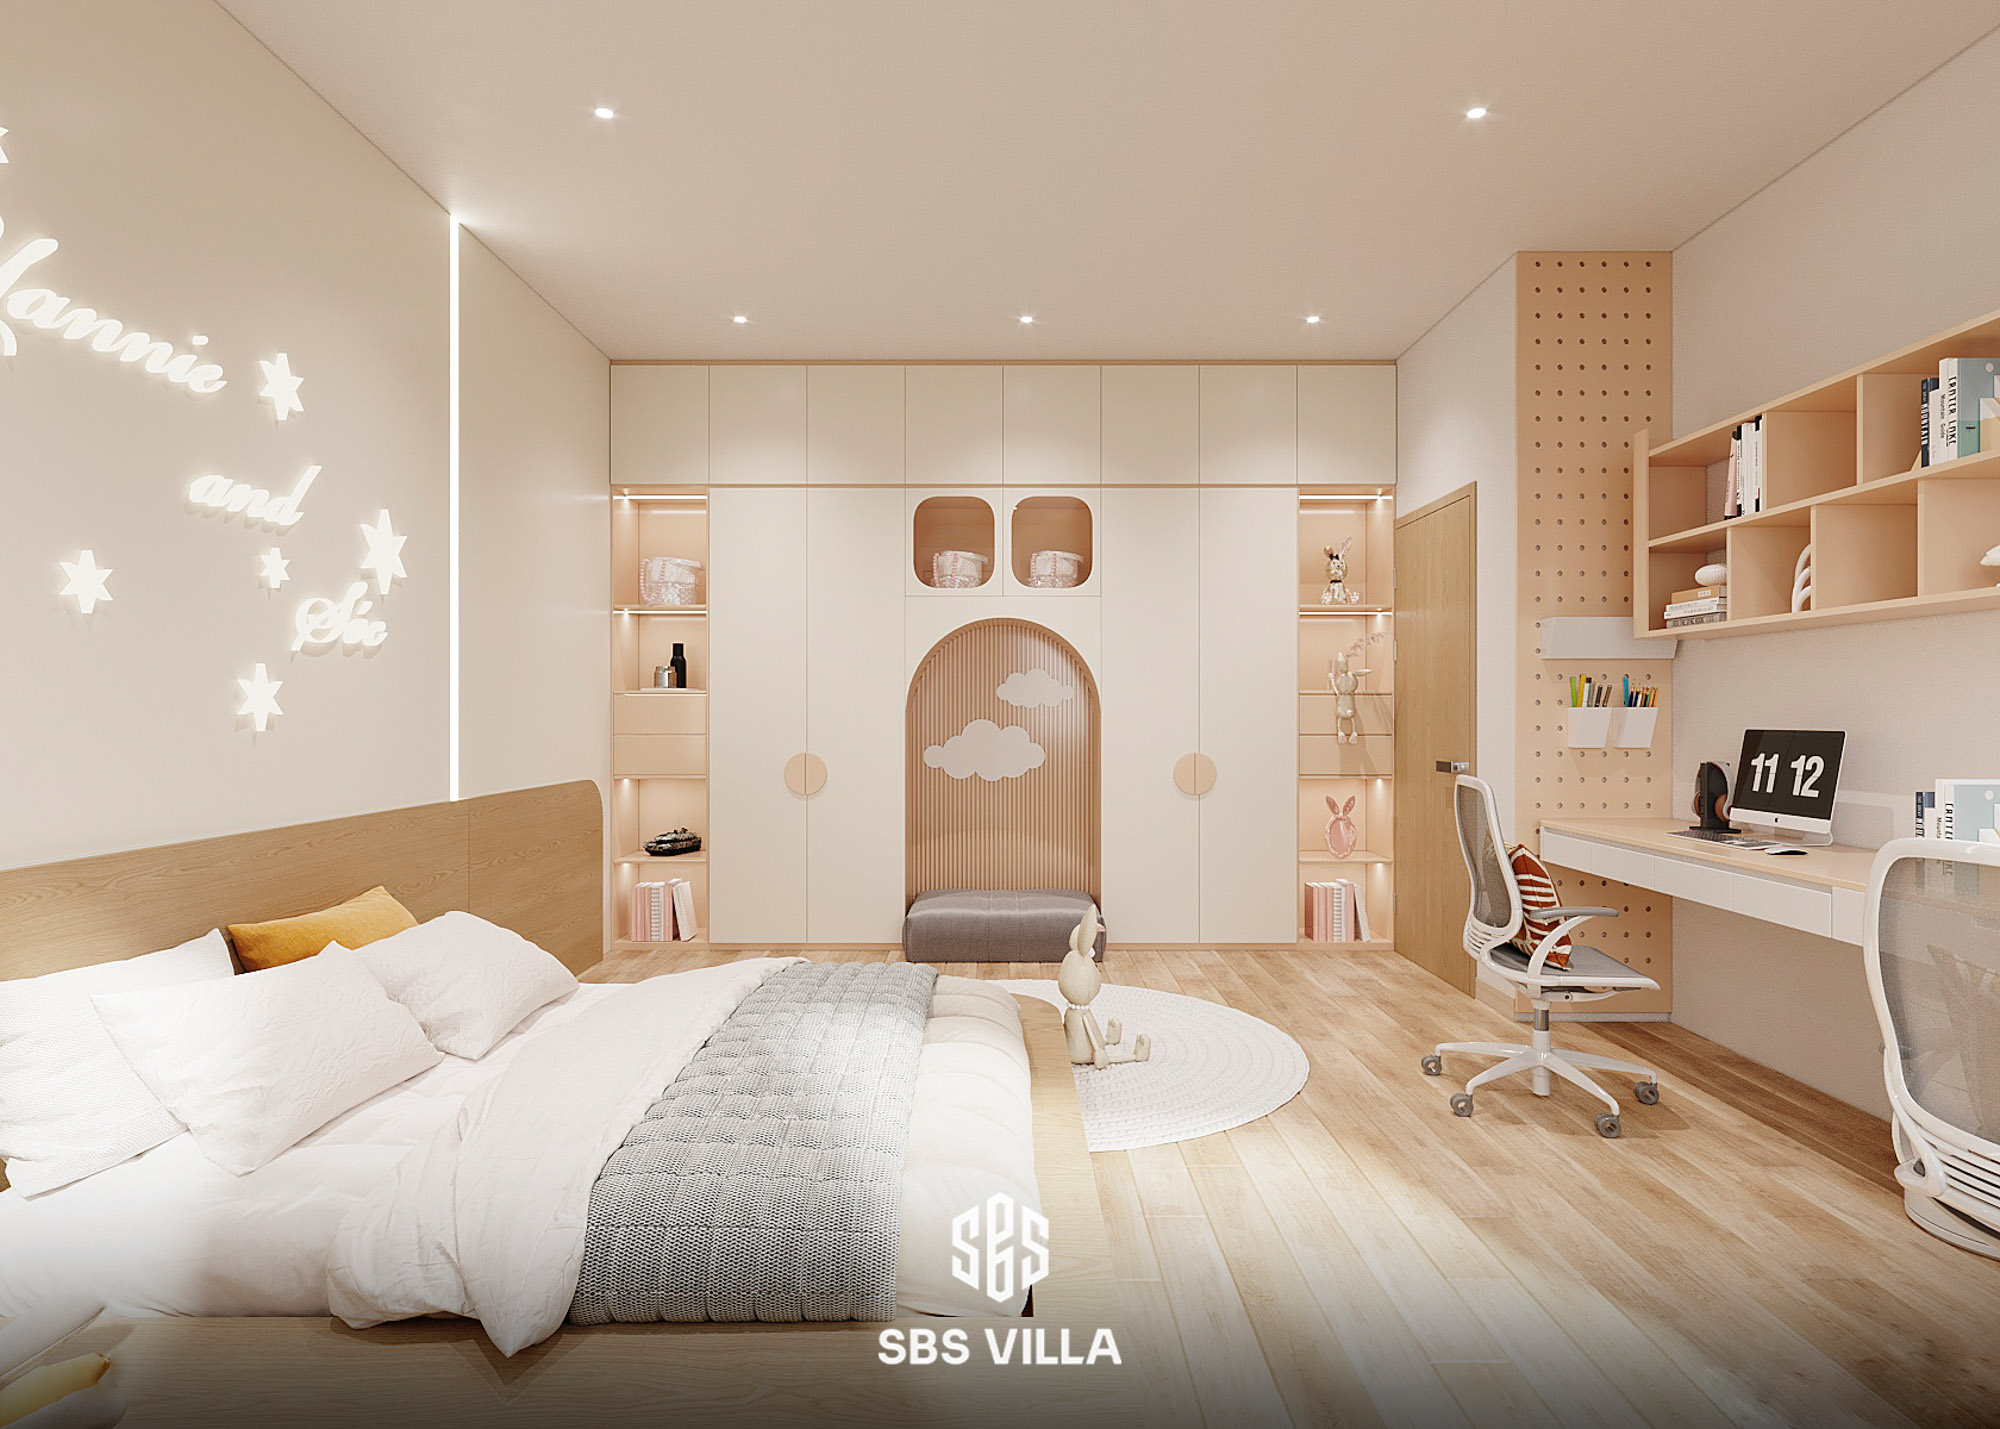 Không gian phòng ngủ dành cho bé mang nét đẹp nhẹ nhàng, tươi sáng và hiện đại